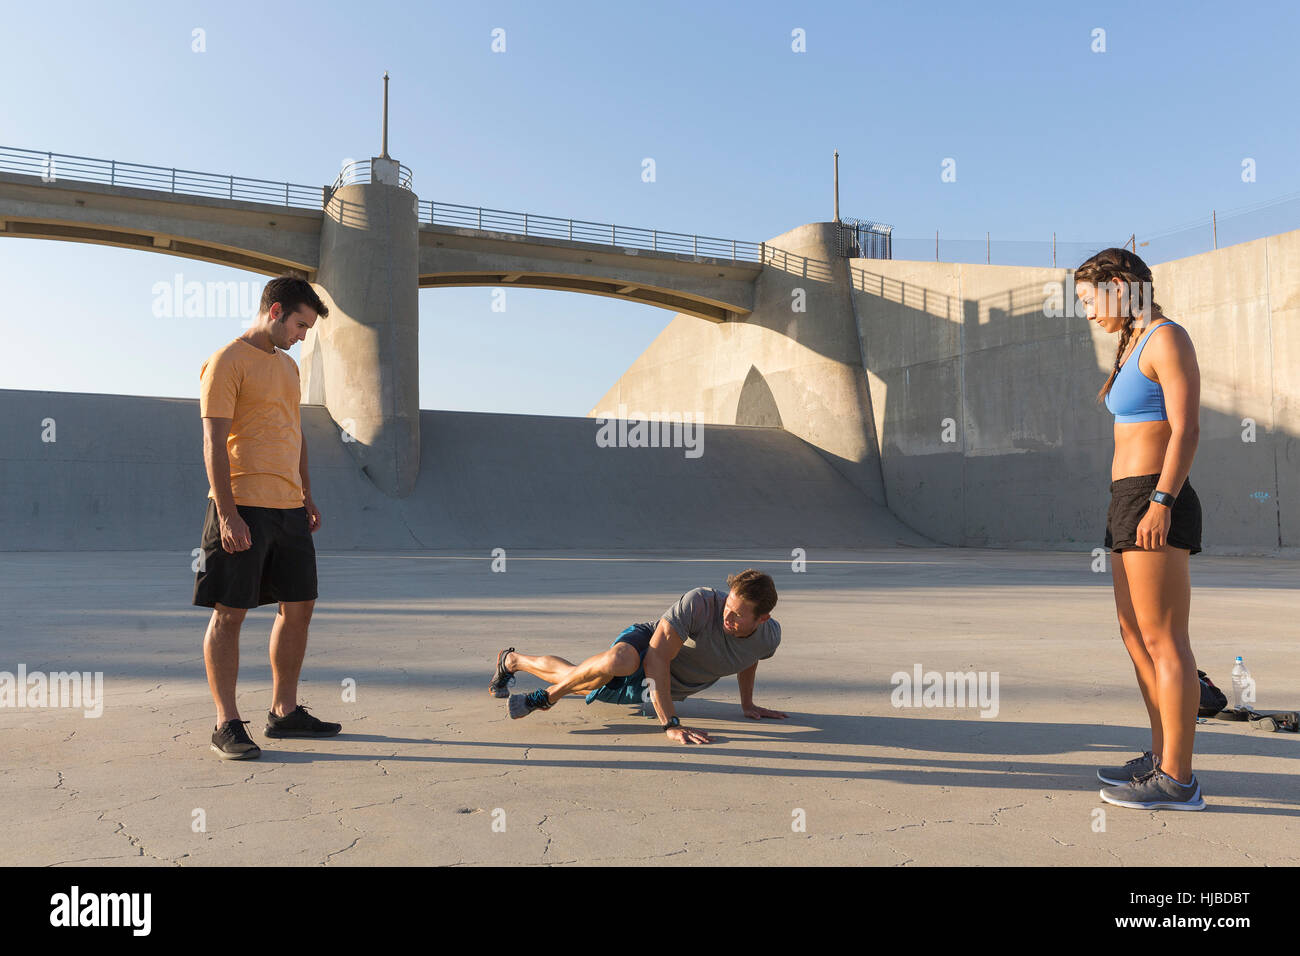 Los atletas observando amigo entrenamiento, Van Nuys, California, EE.UU. Foto de stock